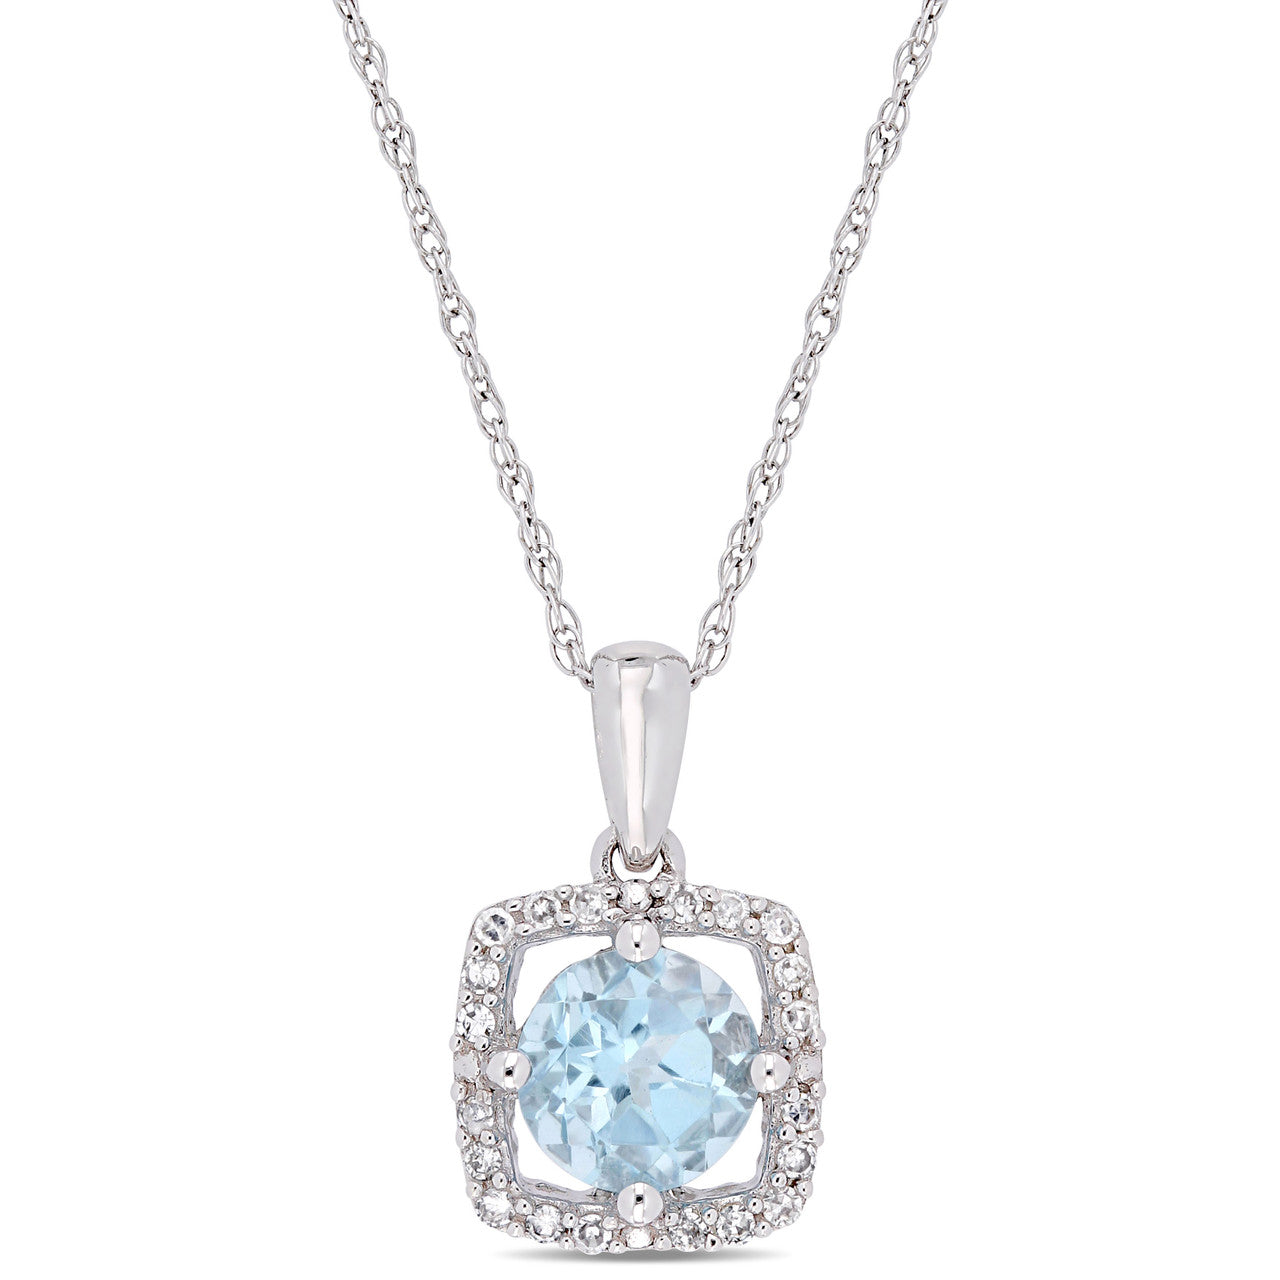 Ice Jewellery 1/10 CT Diamond TW & 1 CT TGW Blue Topaz - Sky Fashion Pendant With Chain 10k White Gold GH I2;I3 - 75000004079 | Ice Jewellery Australia